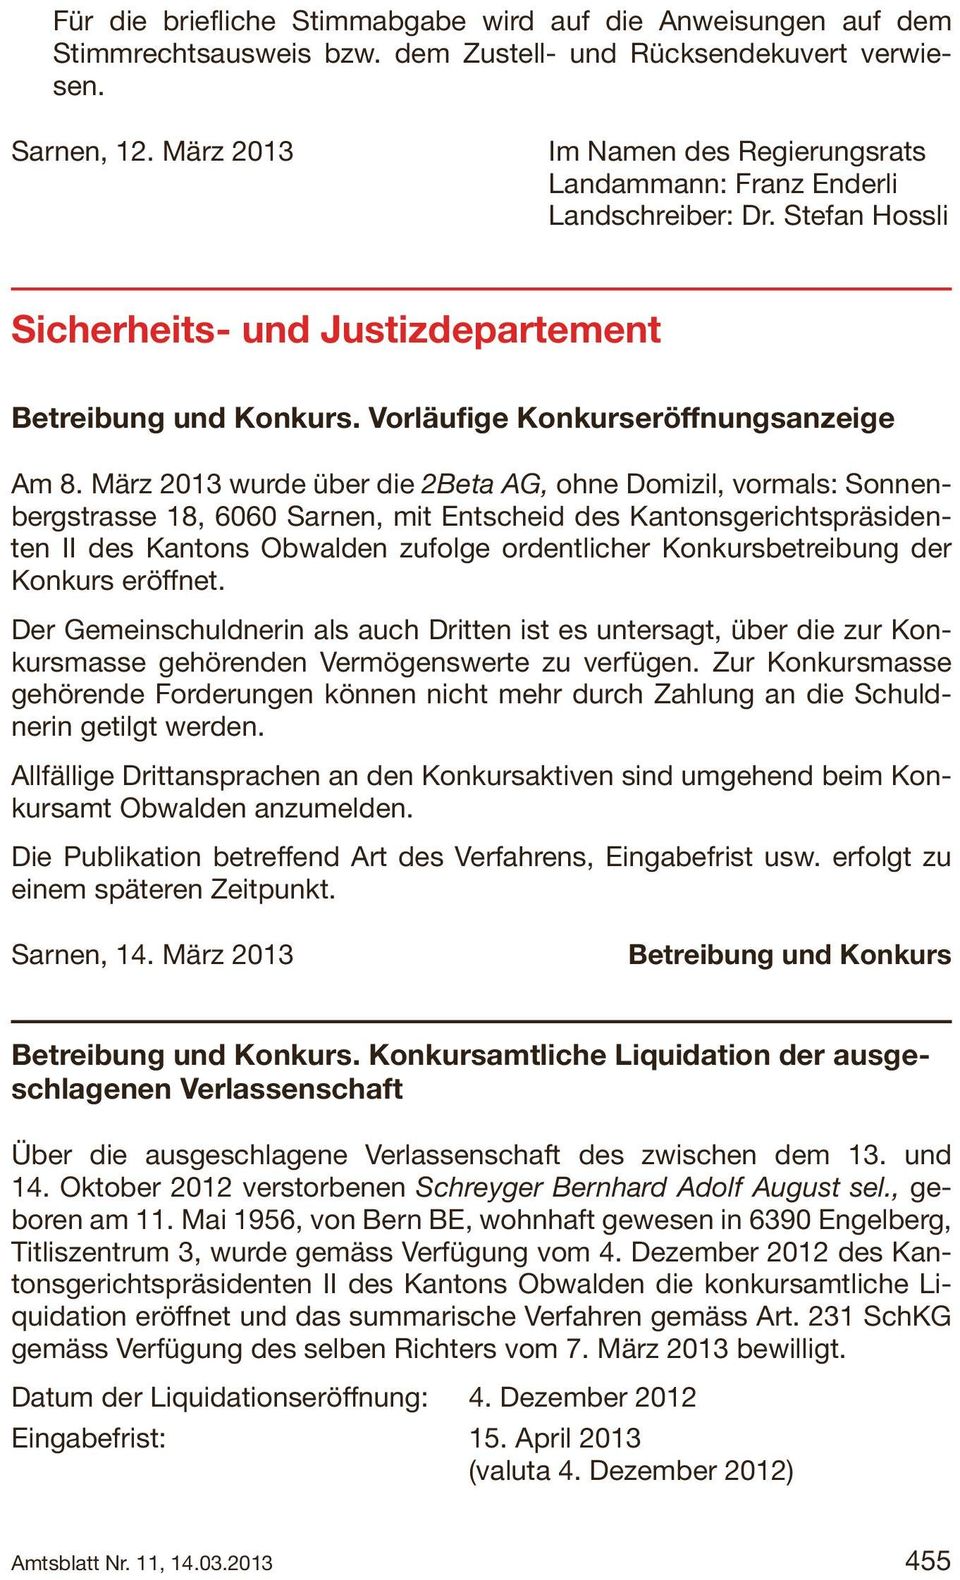 März 2013 wurde über die 2Beta AG, ohne Domizil, vormals: Sonnenbergstrasse 18, 6060 Sarnen, mit Entscheid des Kantonsgerichtspräsidenten II des Kantons Obwalden zufolge ordentlicher